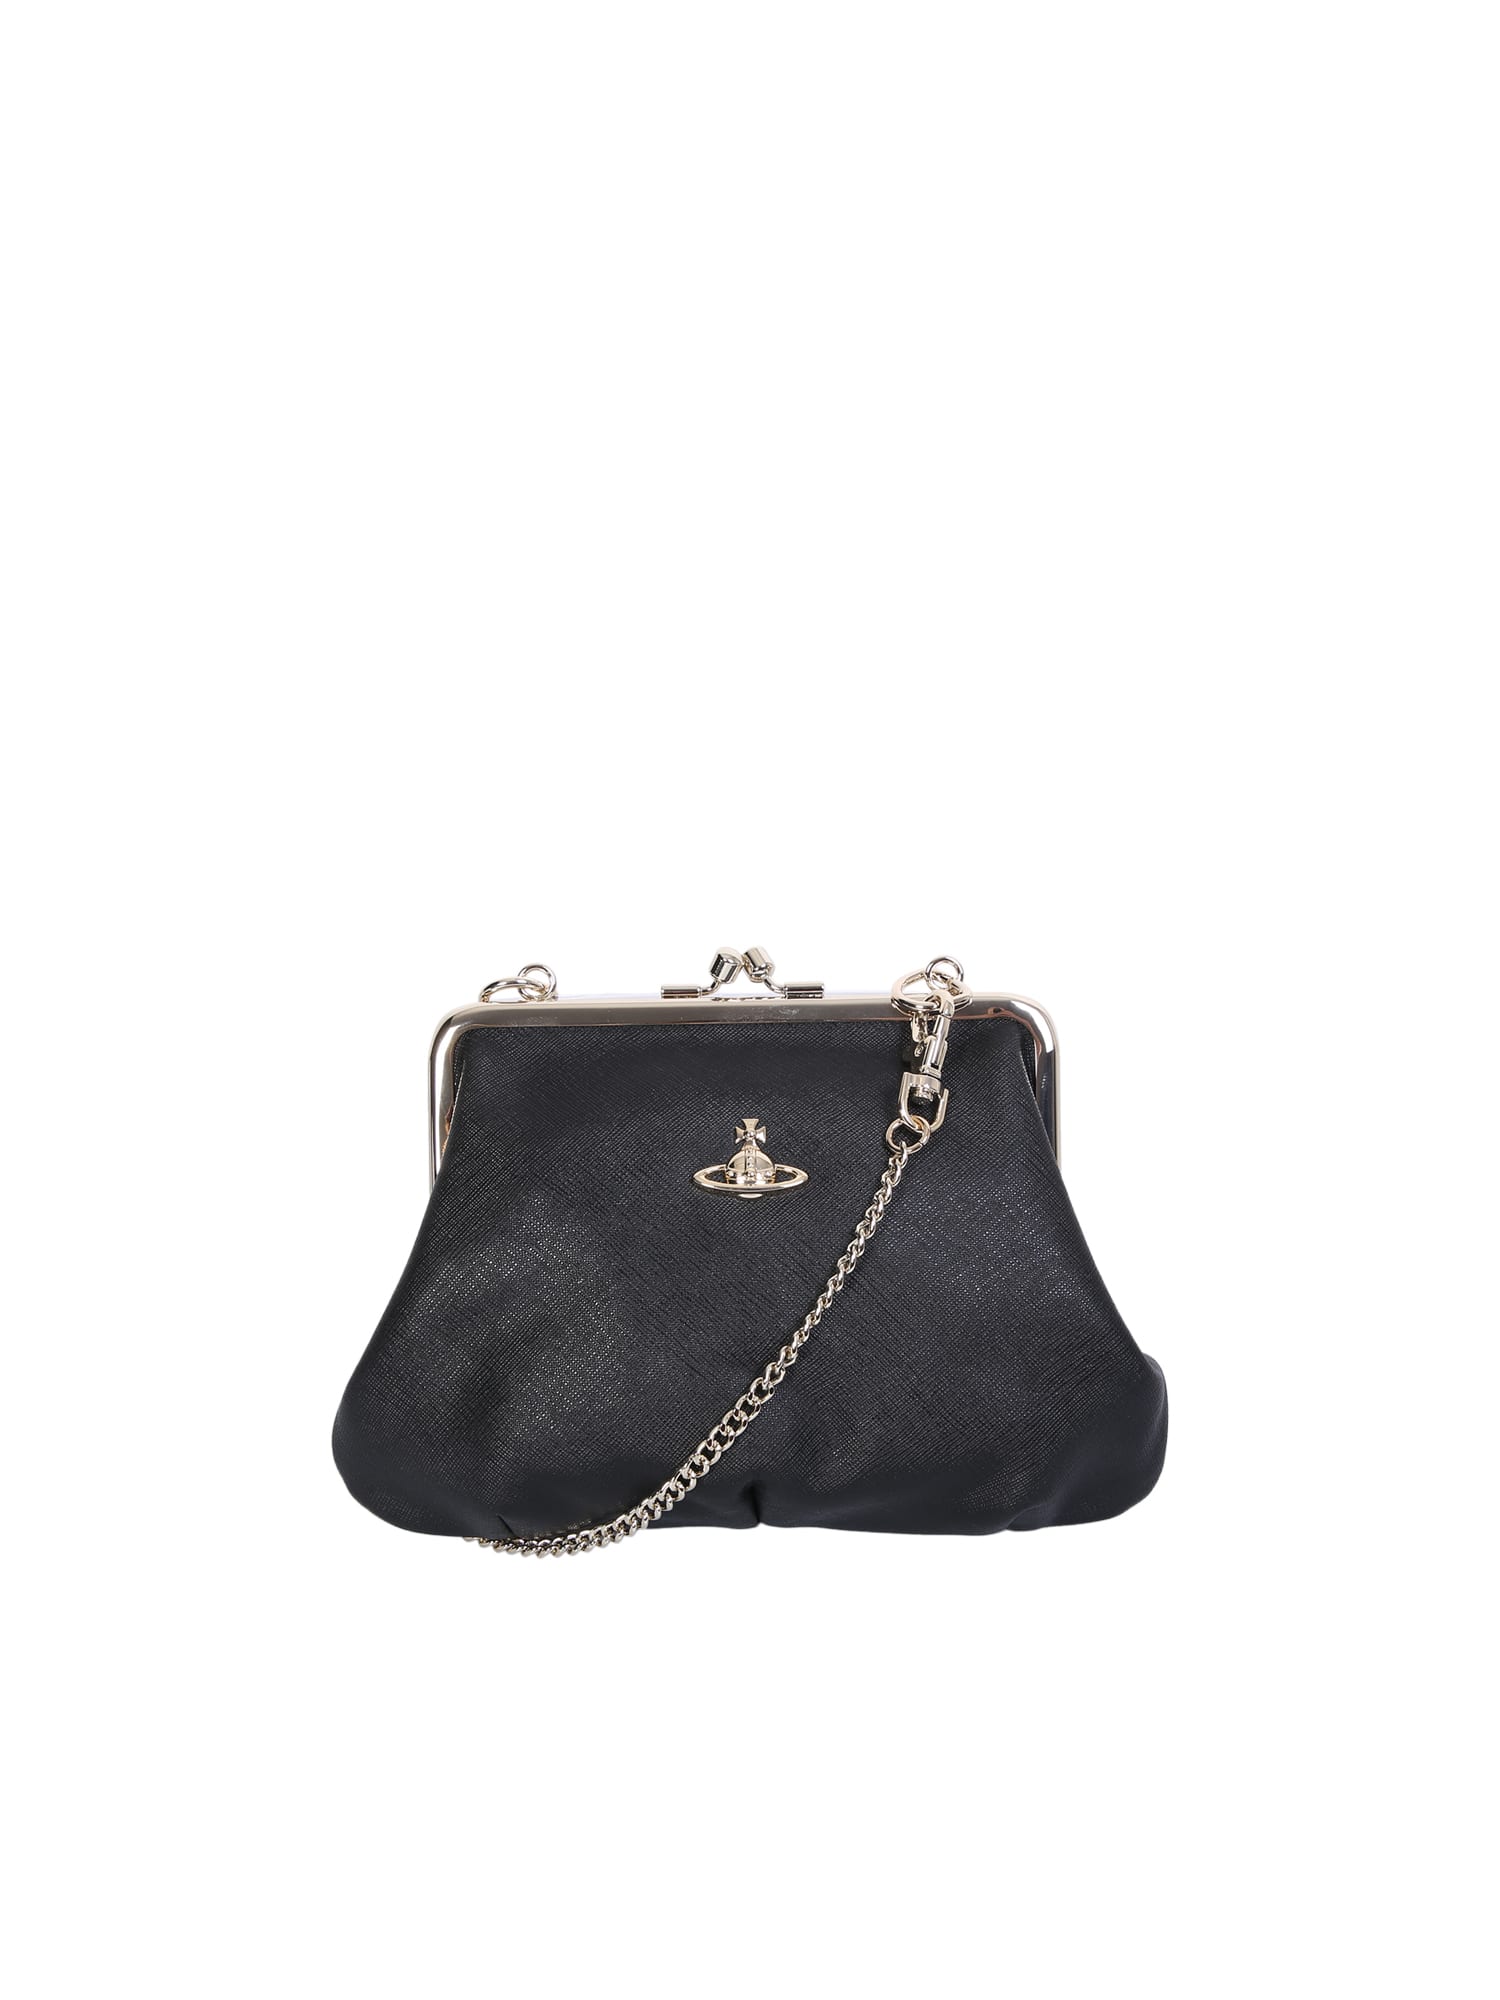 Vivienne Westwood Granny Shoulder Bag In Black